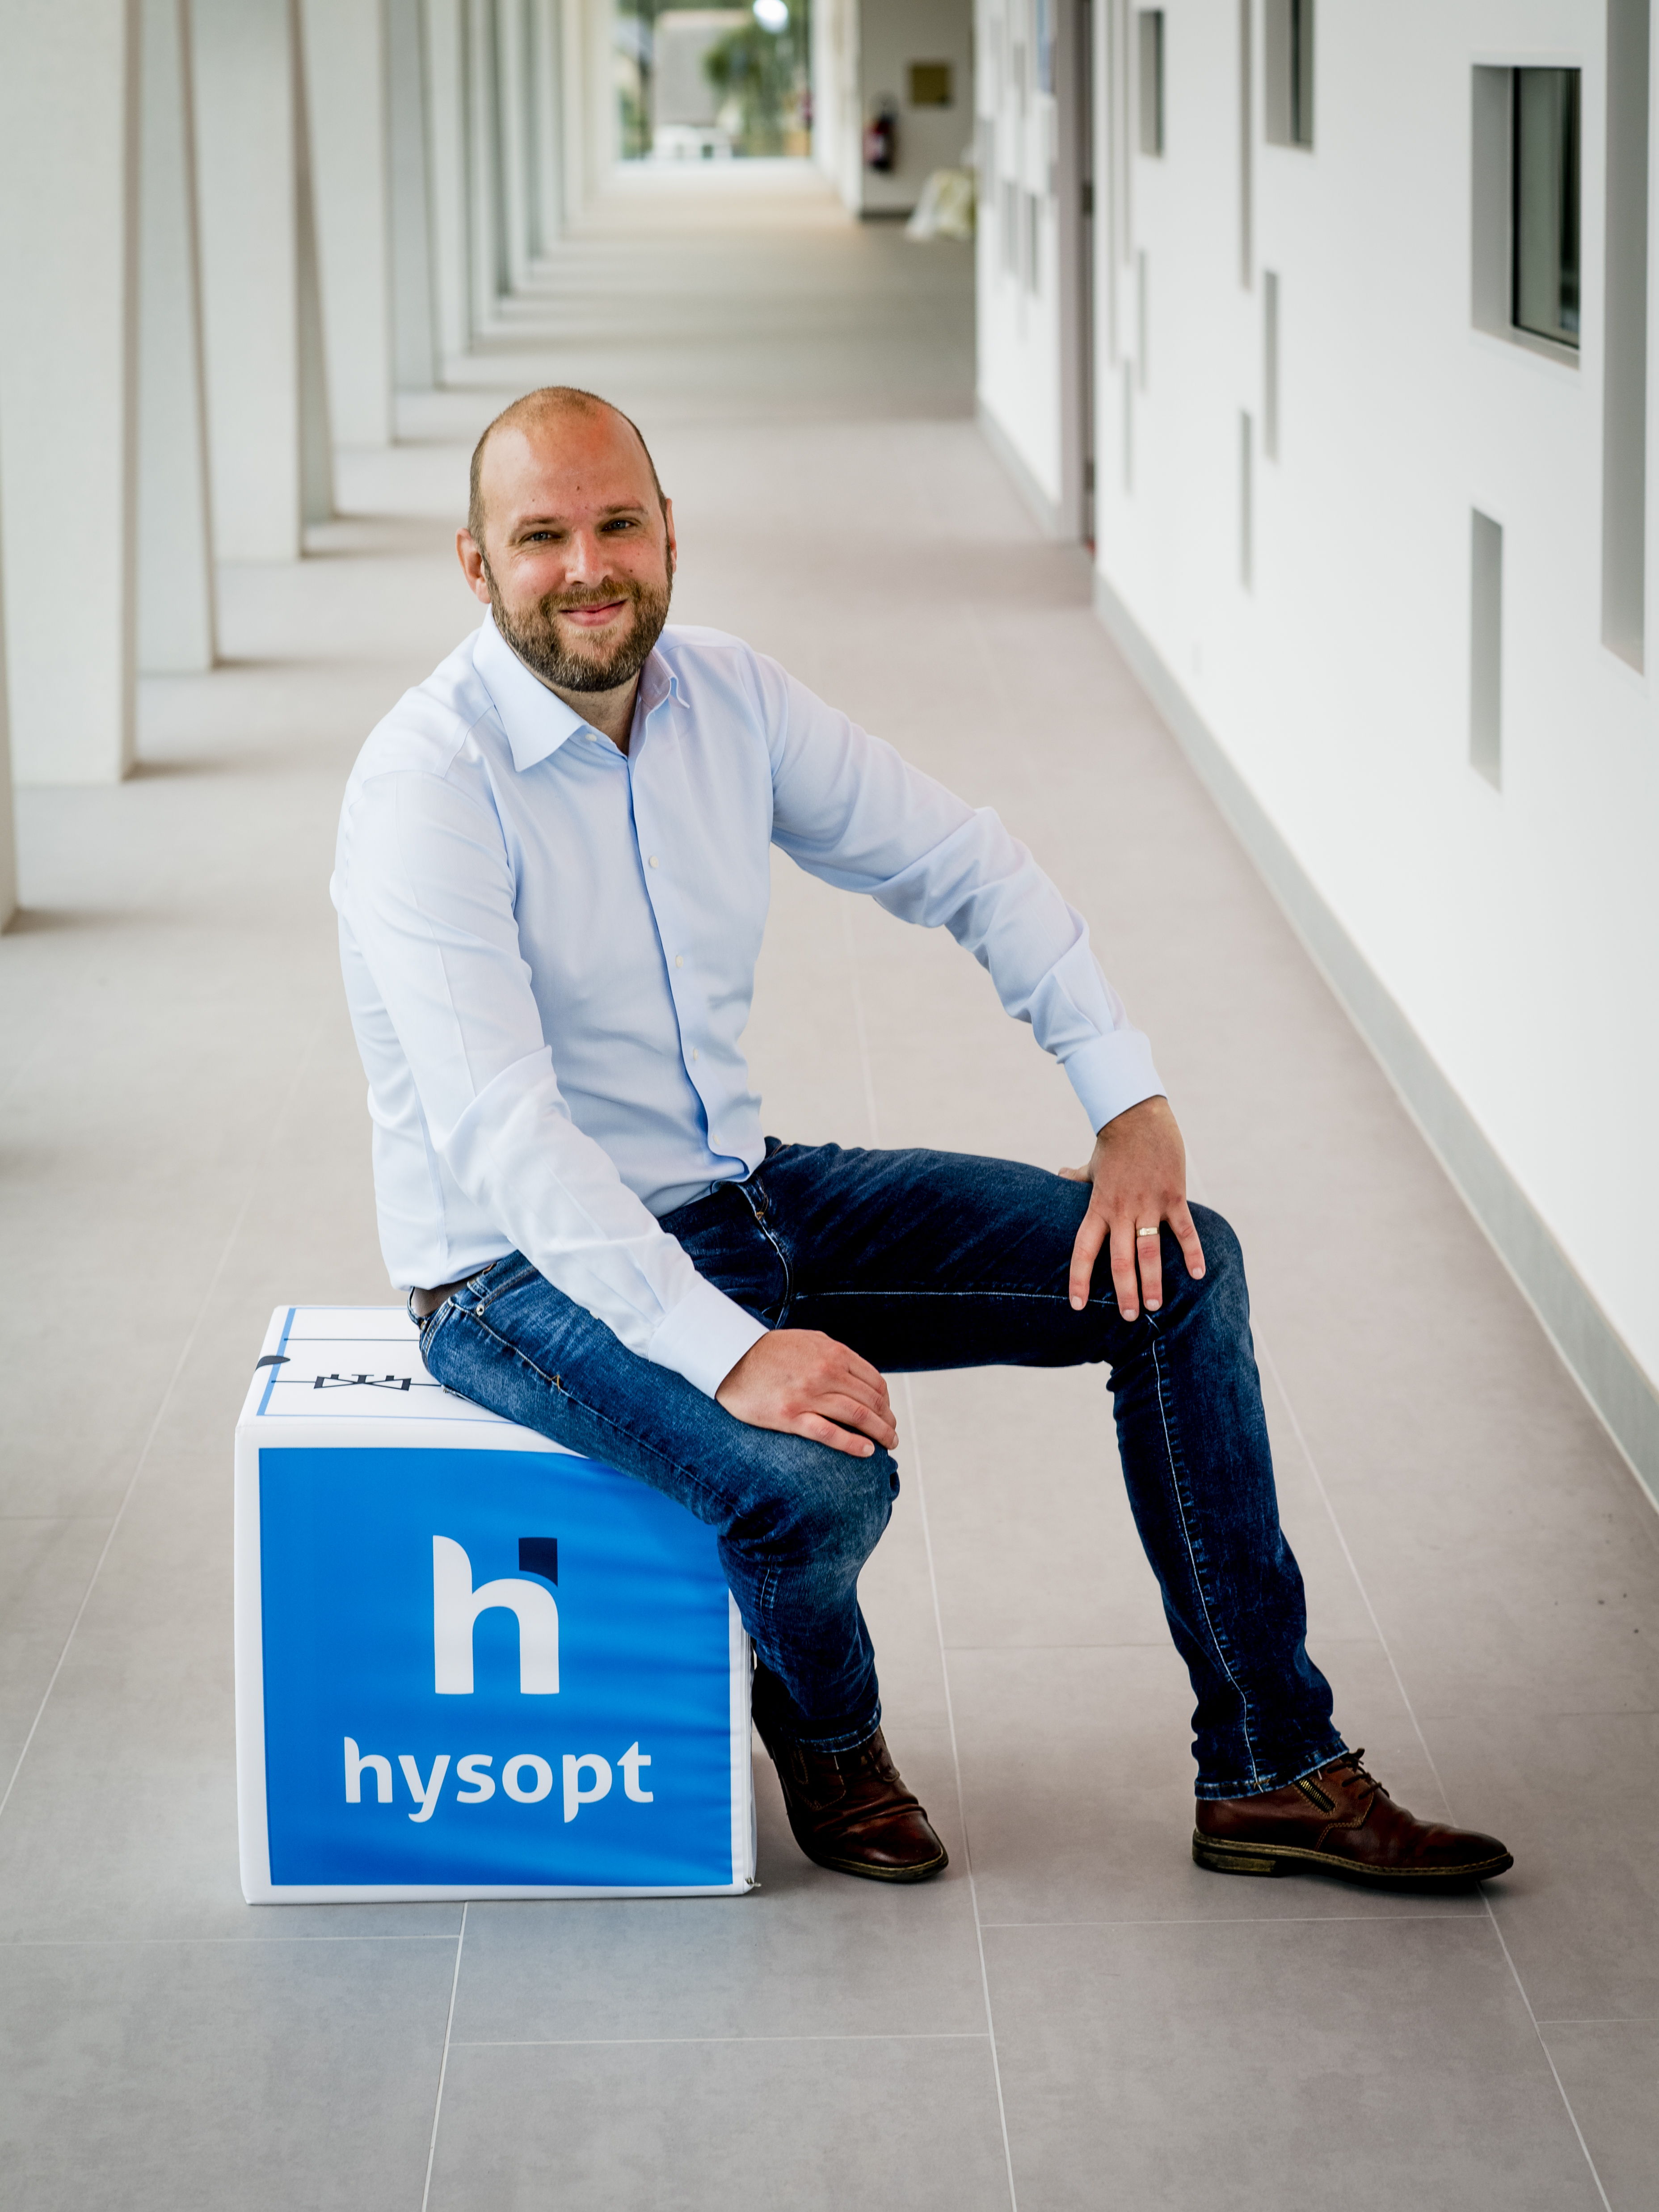 Hysopt, el pionero belga y líder mundial en tecnología en optimización de HVAC, lanzará oficialmente su Hysopt BIM syncer© durante un seminario web gratuito el jueves 29 de junio.